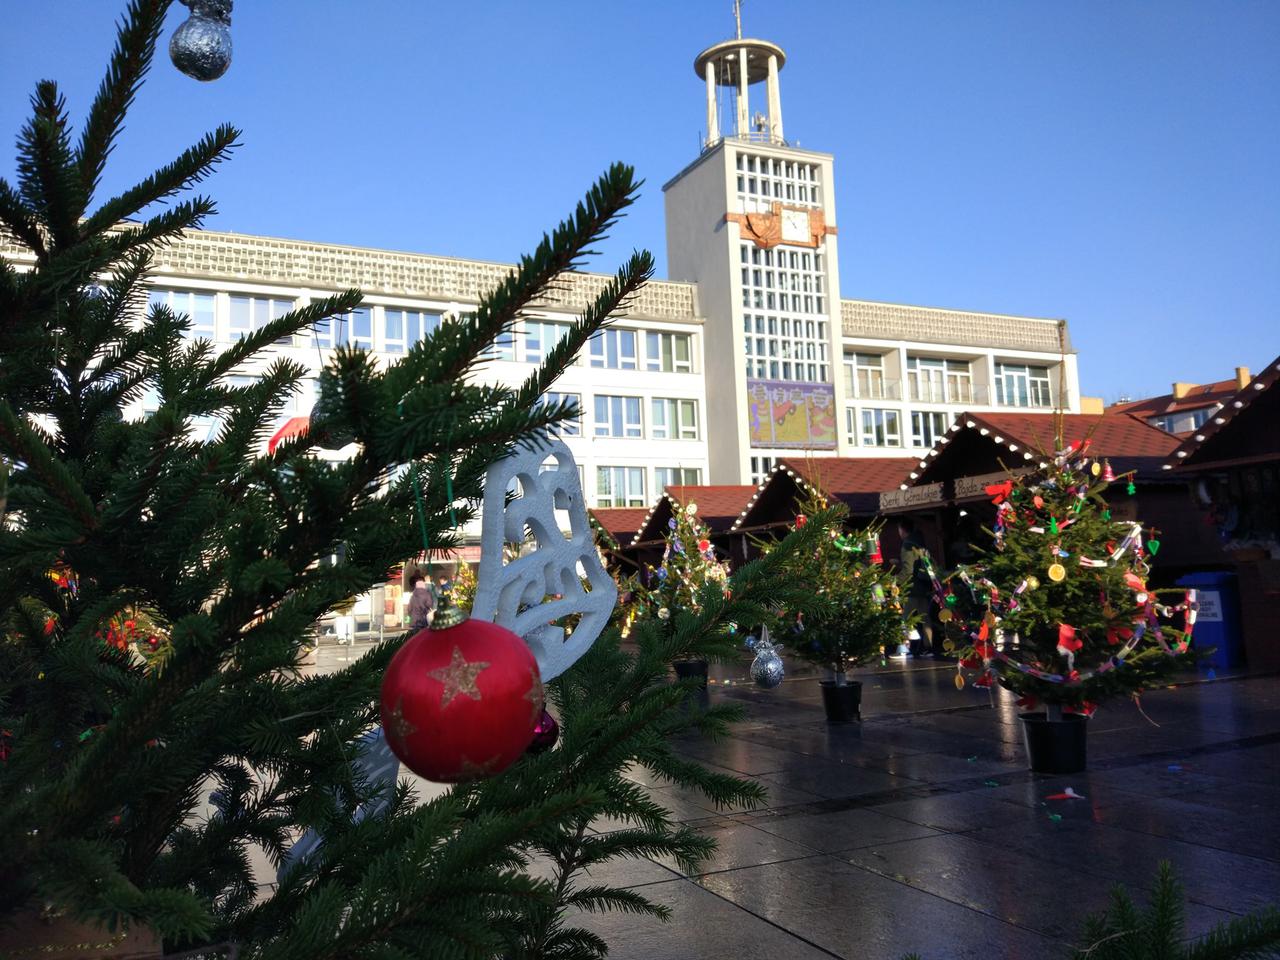 Trwa świąteczny jarmark w Koszalinie. Na plac przed ratuszem przychodzą tłumy [ZDJĘCIA]